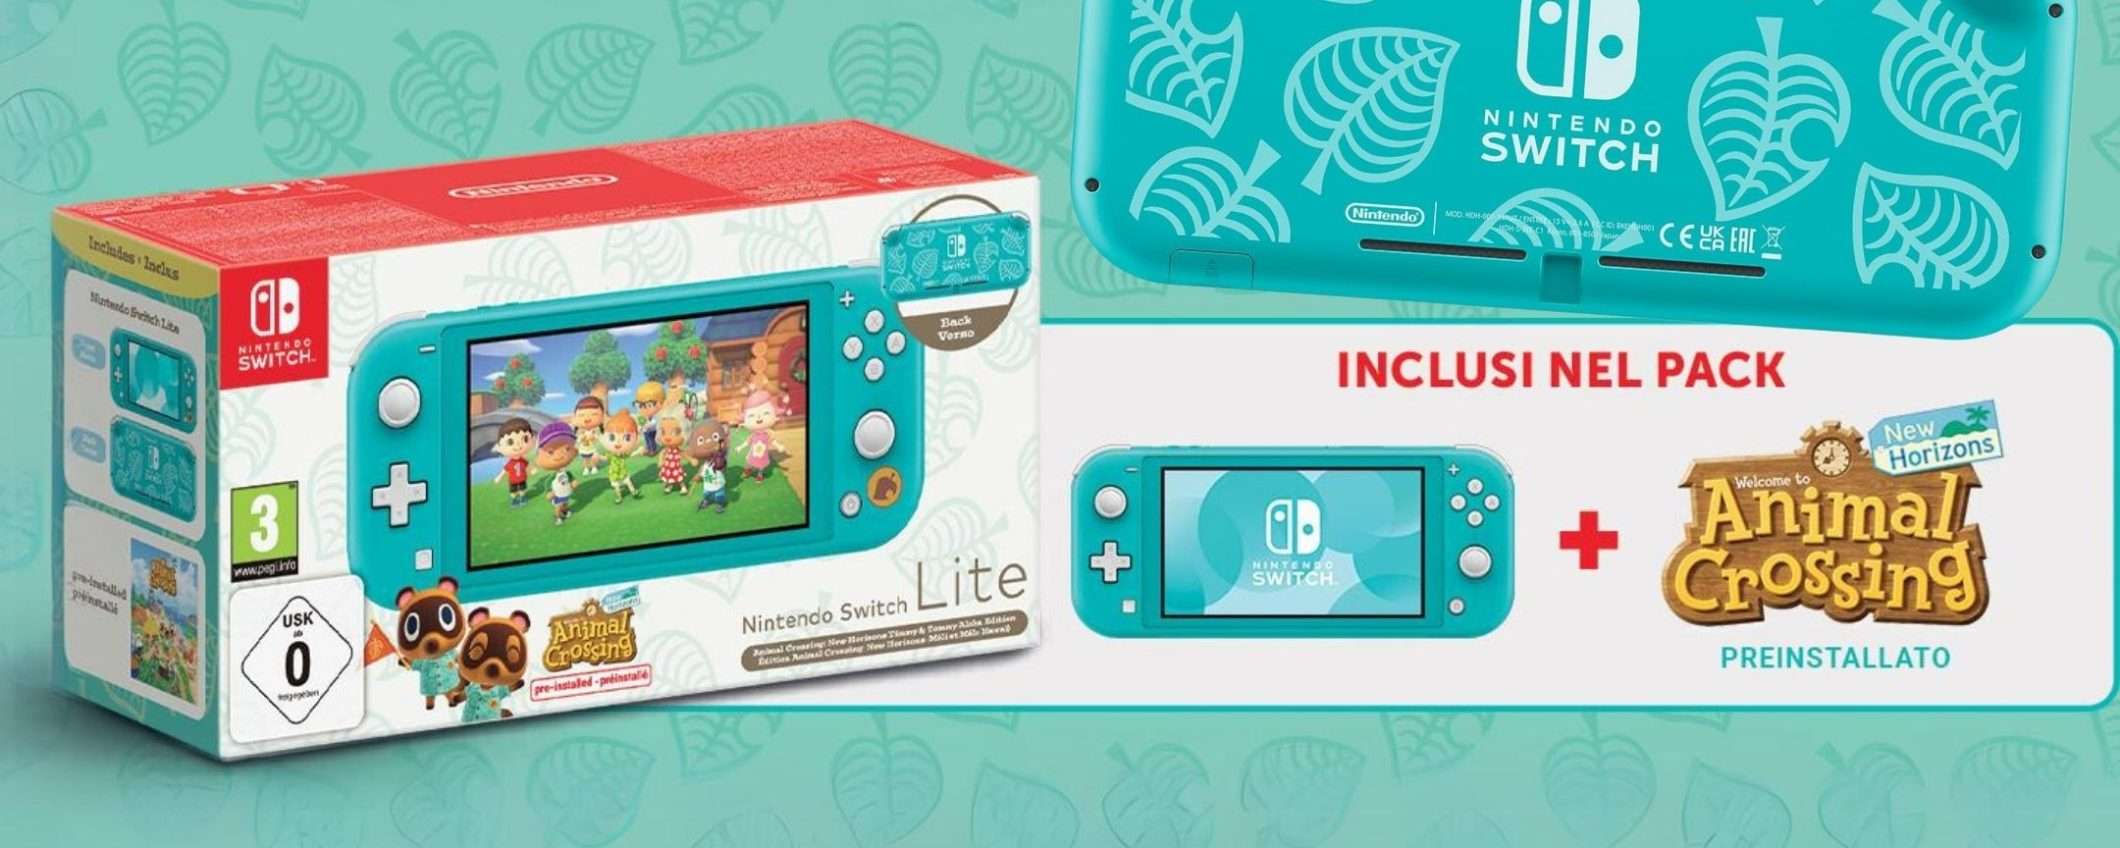 FAI PRESTO! Nintendo Switch Lite in edizione Animal Crossing è su Amazon!